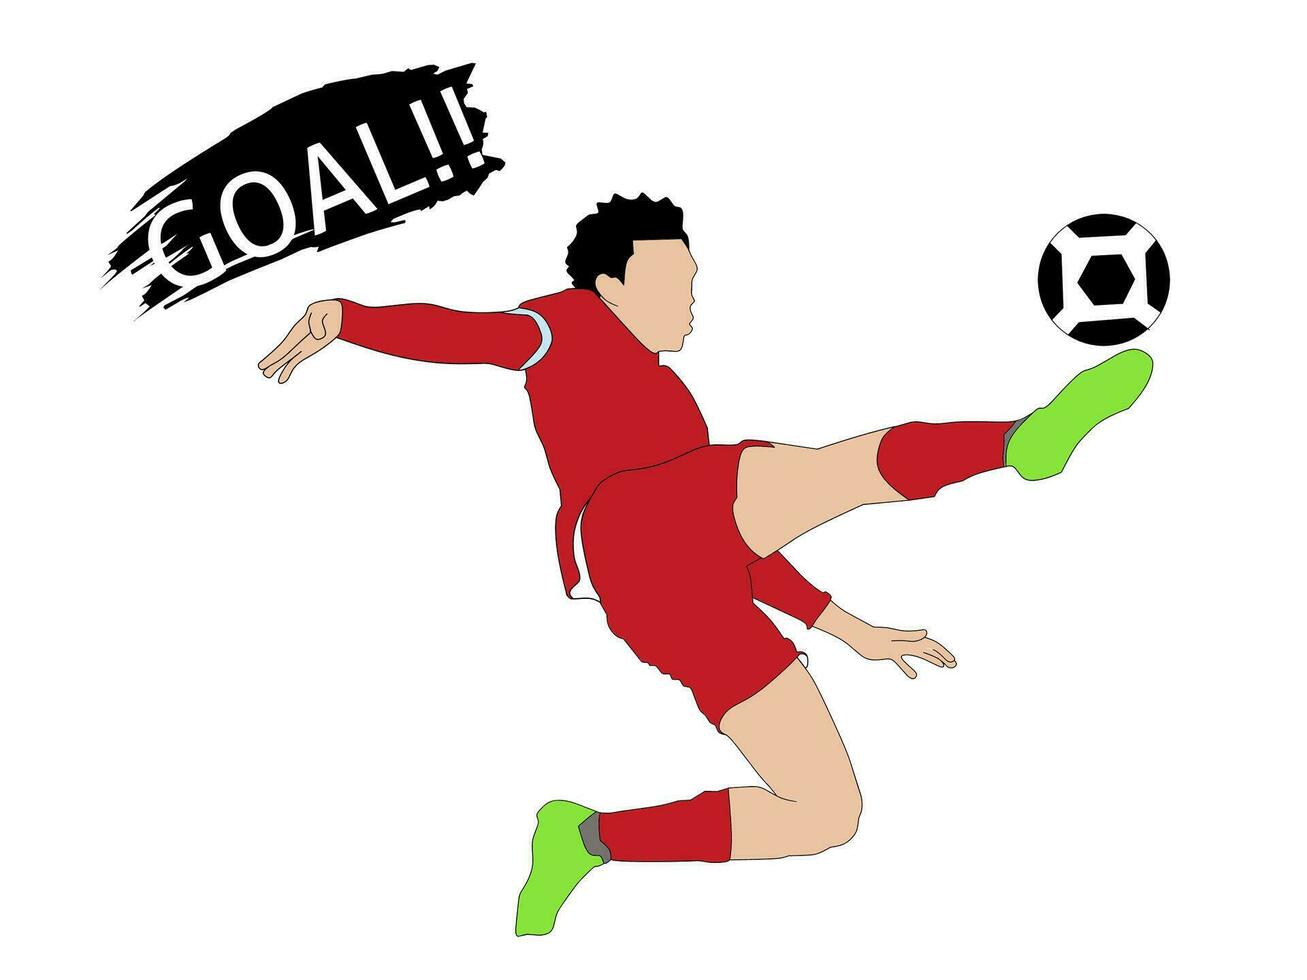 grafisk vektor av en fotboll spelare. där är en visa av de text mål sporter -tema. illustration resultat baserad på penna boll poäng och digital borstar.